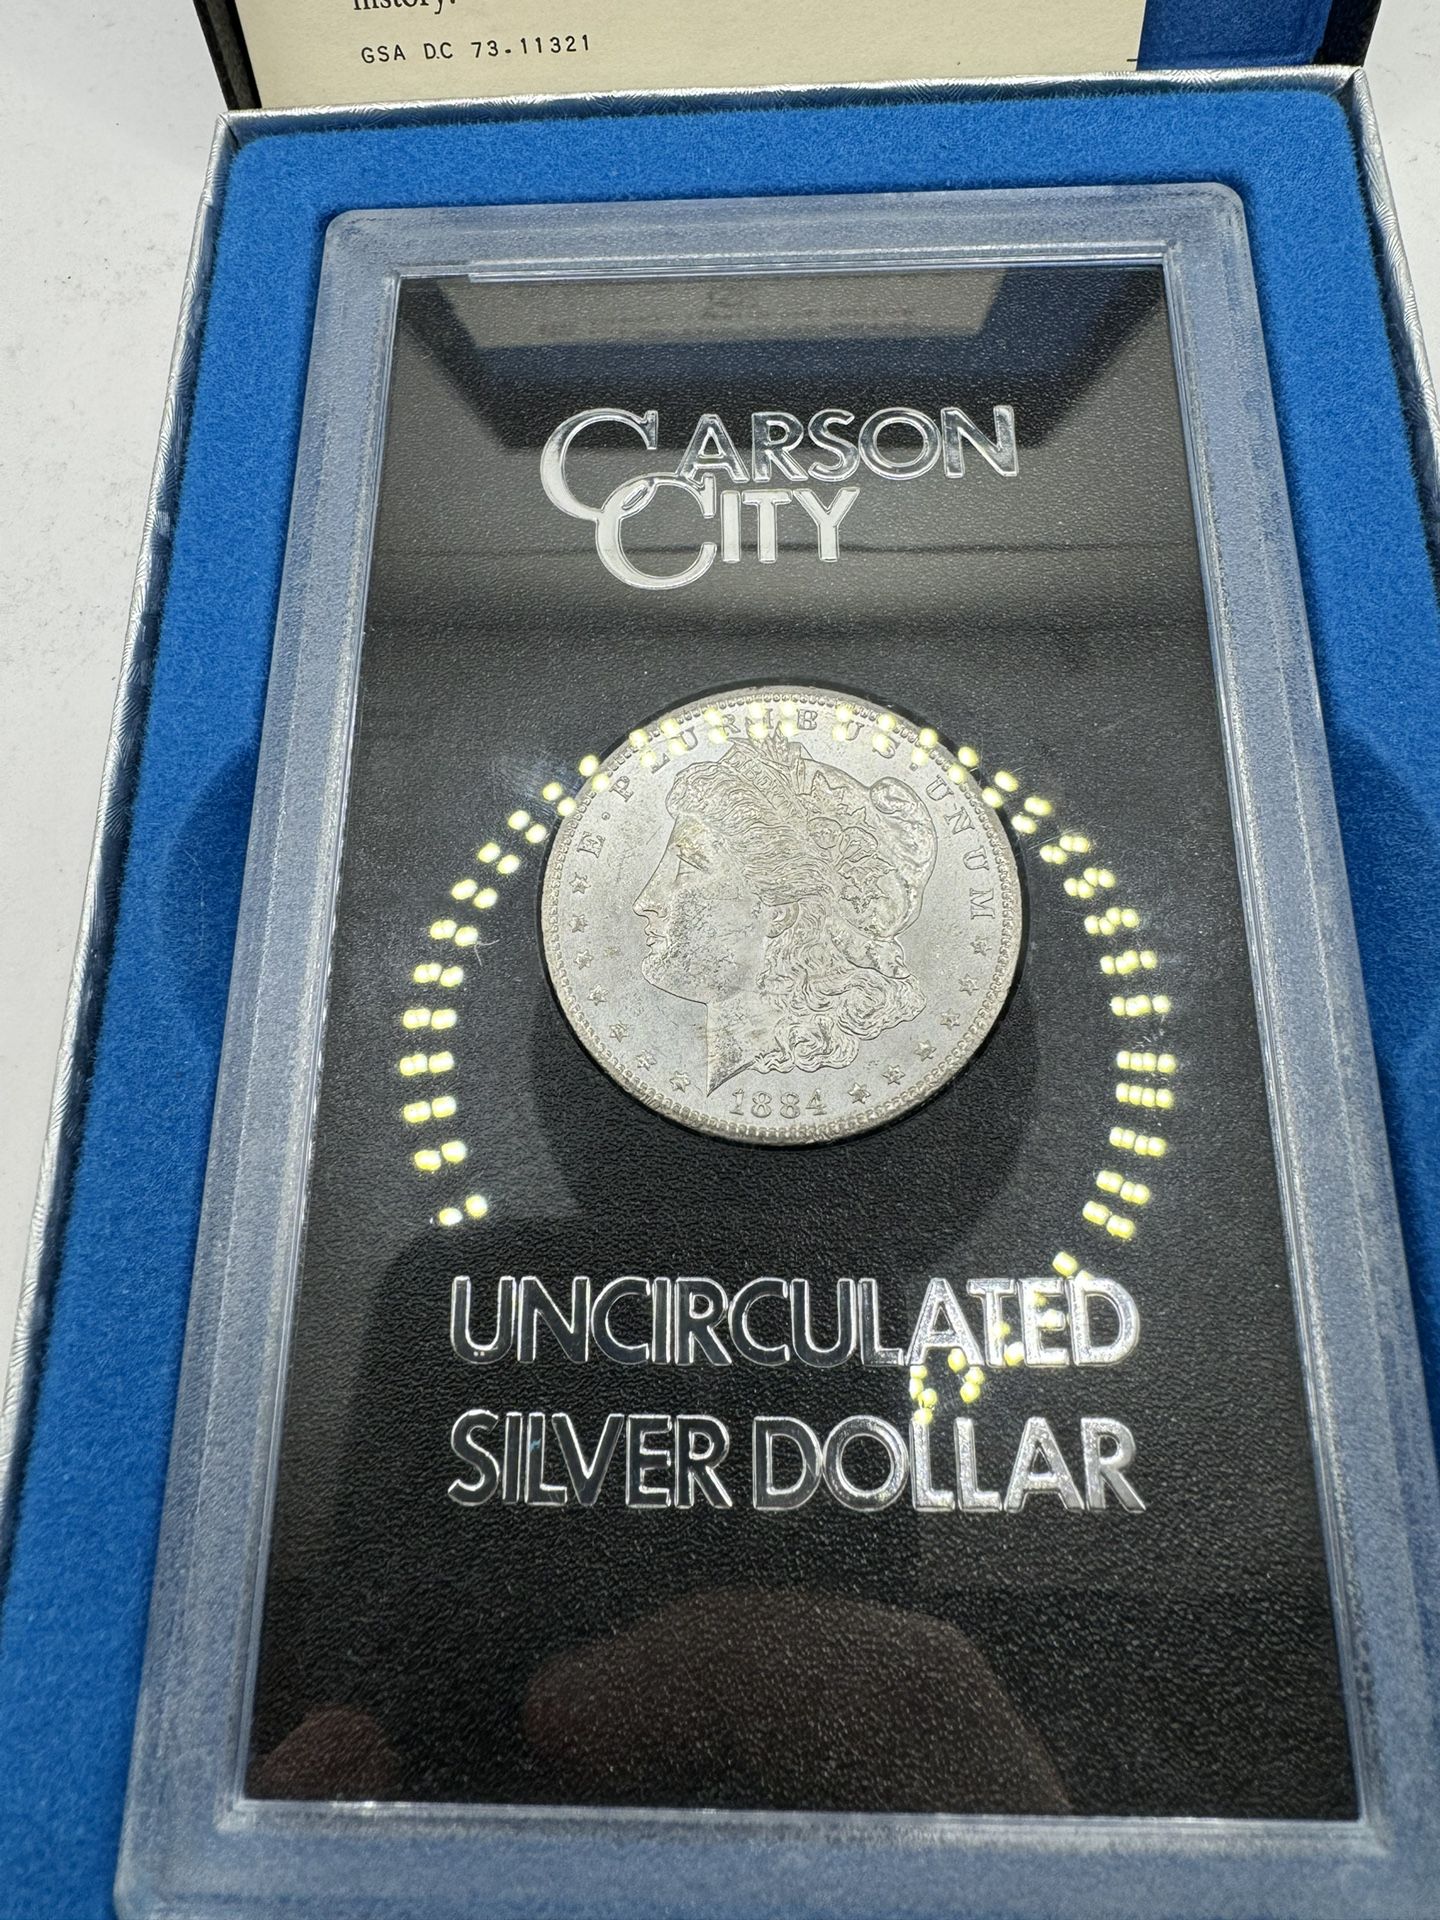 Uncirculated GSA Hoard 1884 - Carson City Morgan Silver Dollar Coin